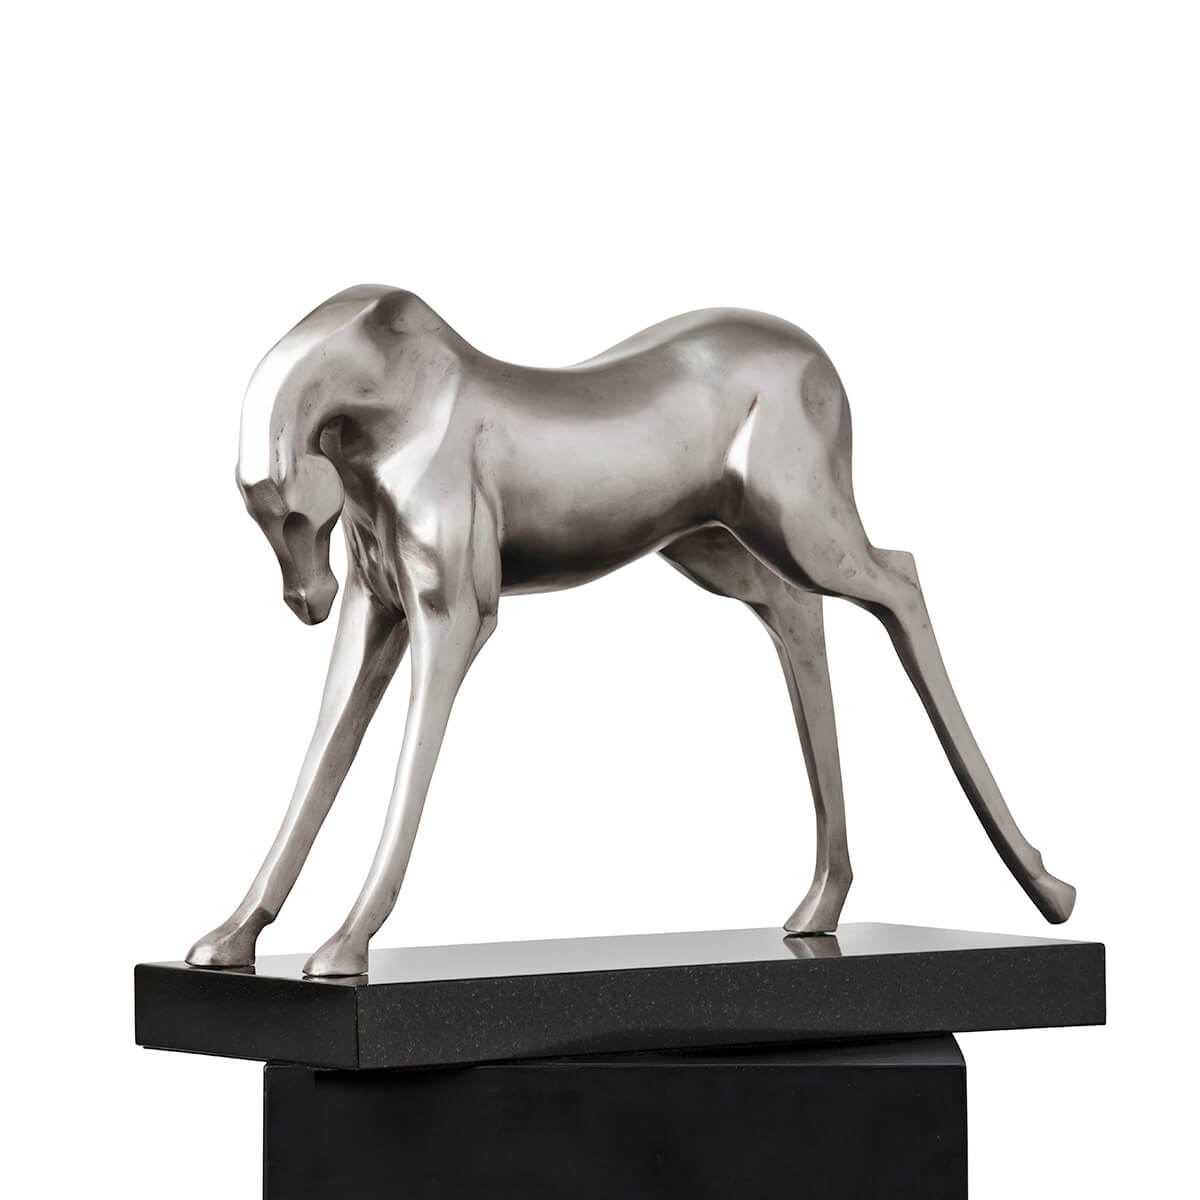 Robert-Helle-Sculpture-Gallery-Horse-1-1200x1200